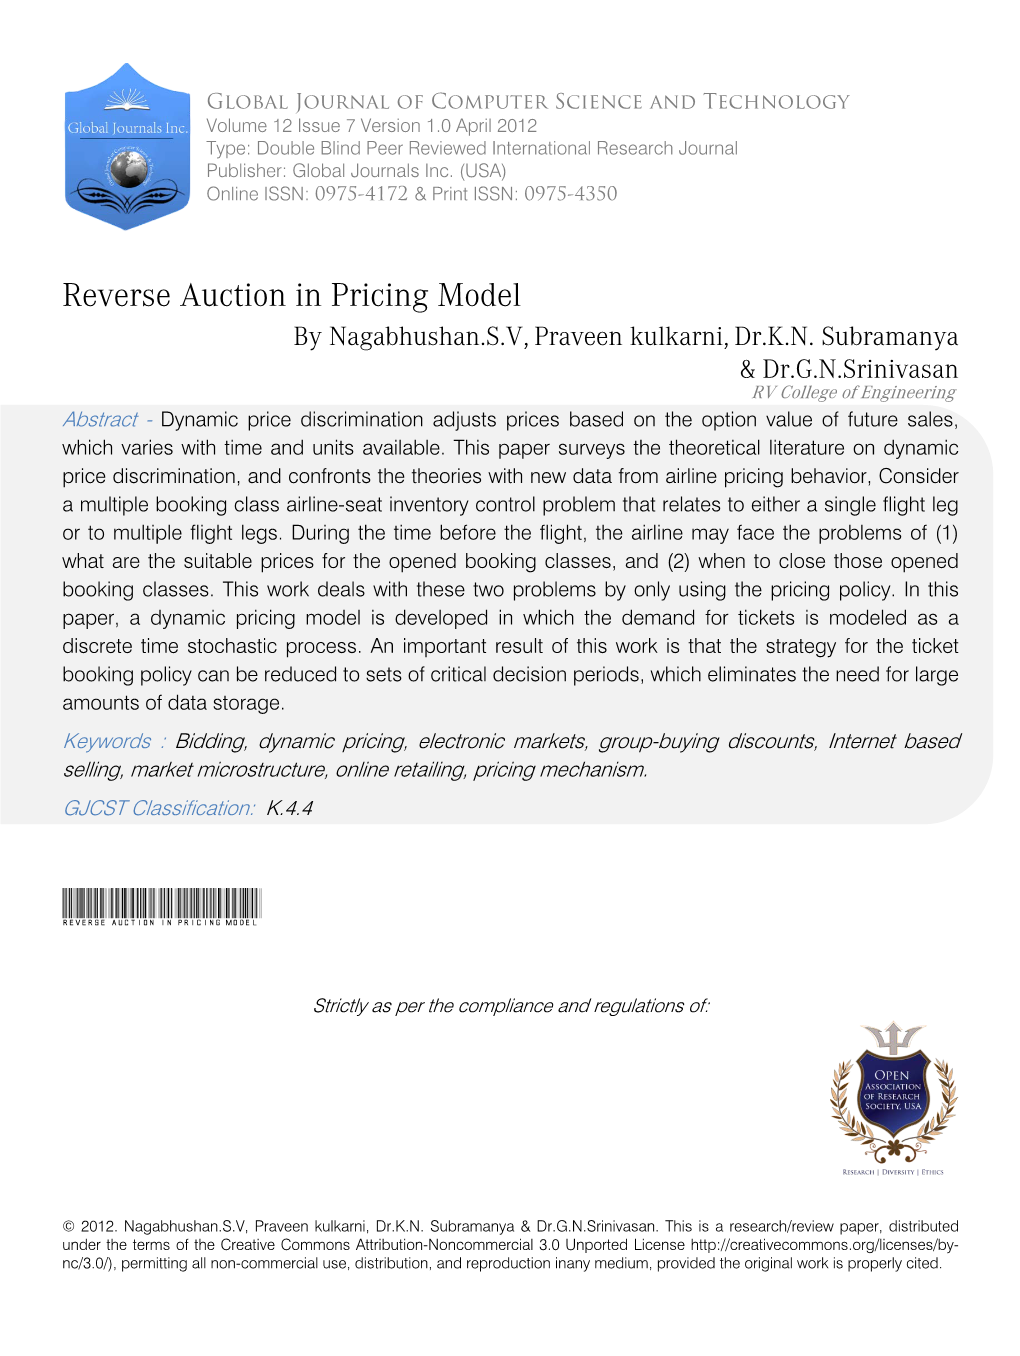 Reverse Auction in Pricing Model by Nagabhushan.S.V, Praveen Kulkarni, Dr.K.N